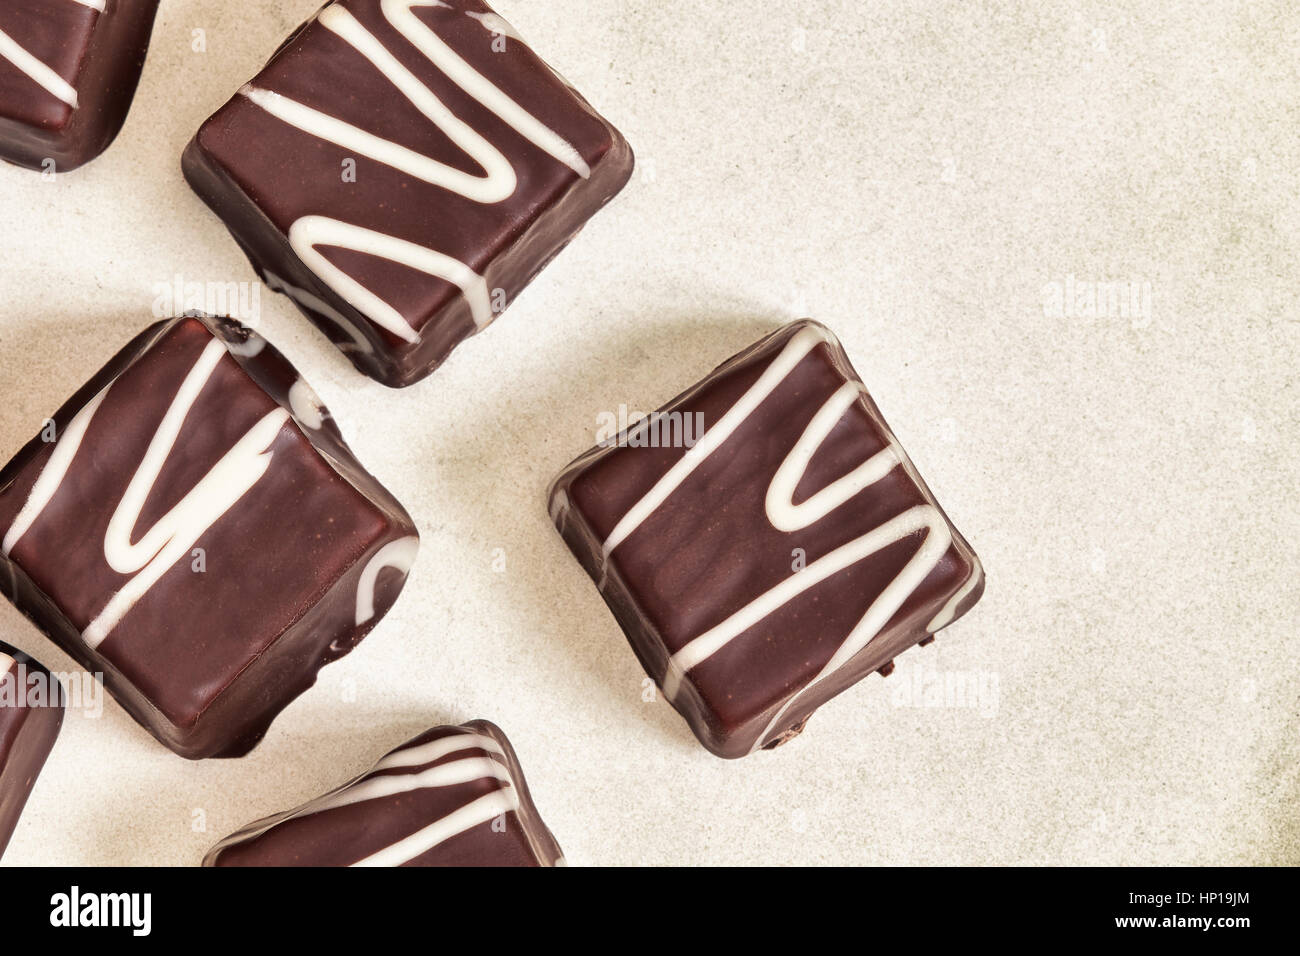 Piccole torte al cioccolato (mignon) con crema. Vista da sopra con lo spazio di copia Foto Stock